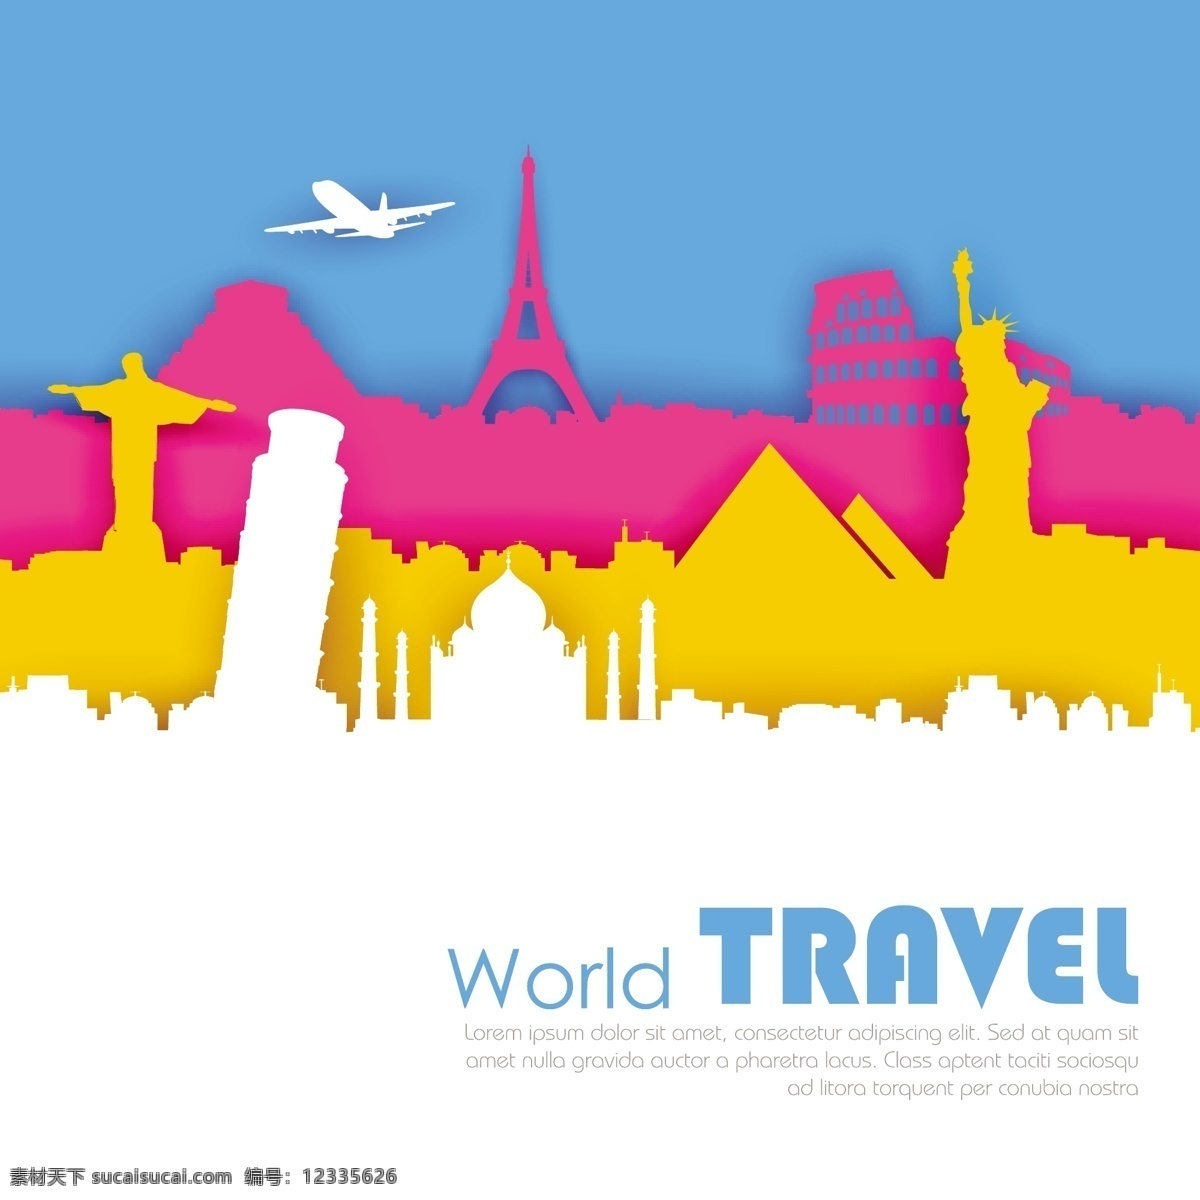 世界 旅游 地标 矢量 彩色 飞机 矢量素材 设计素材